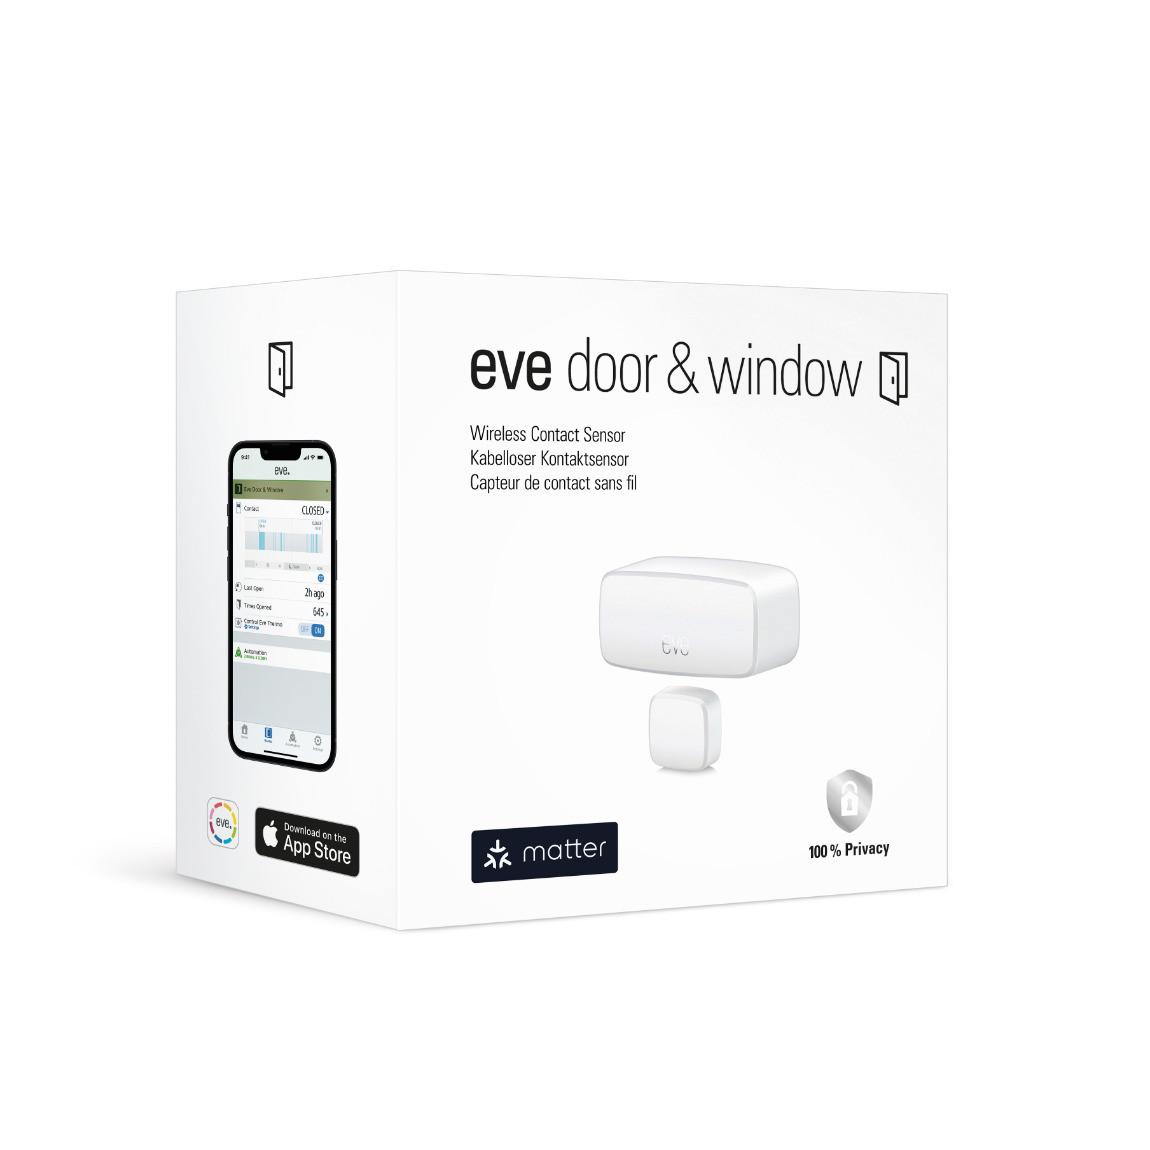 Eve Door & Window_Verpackung